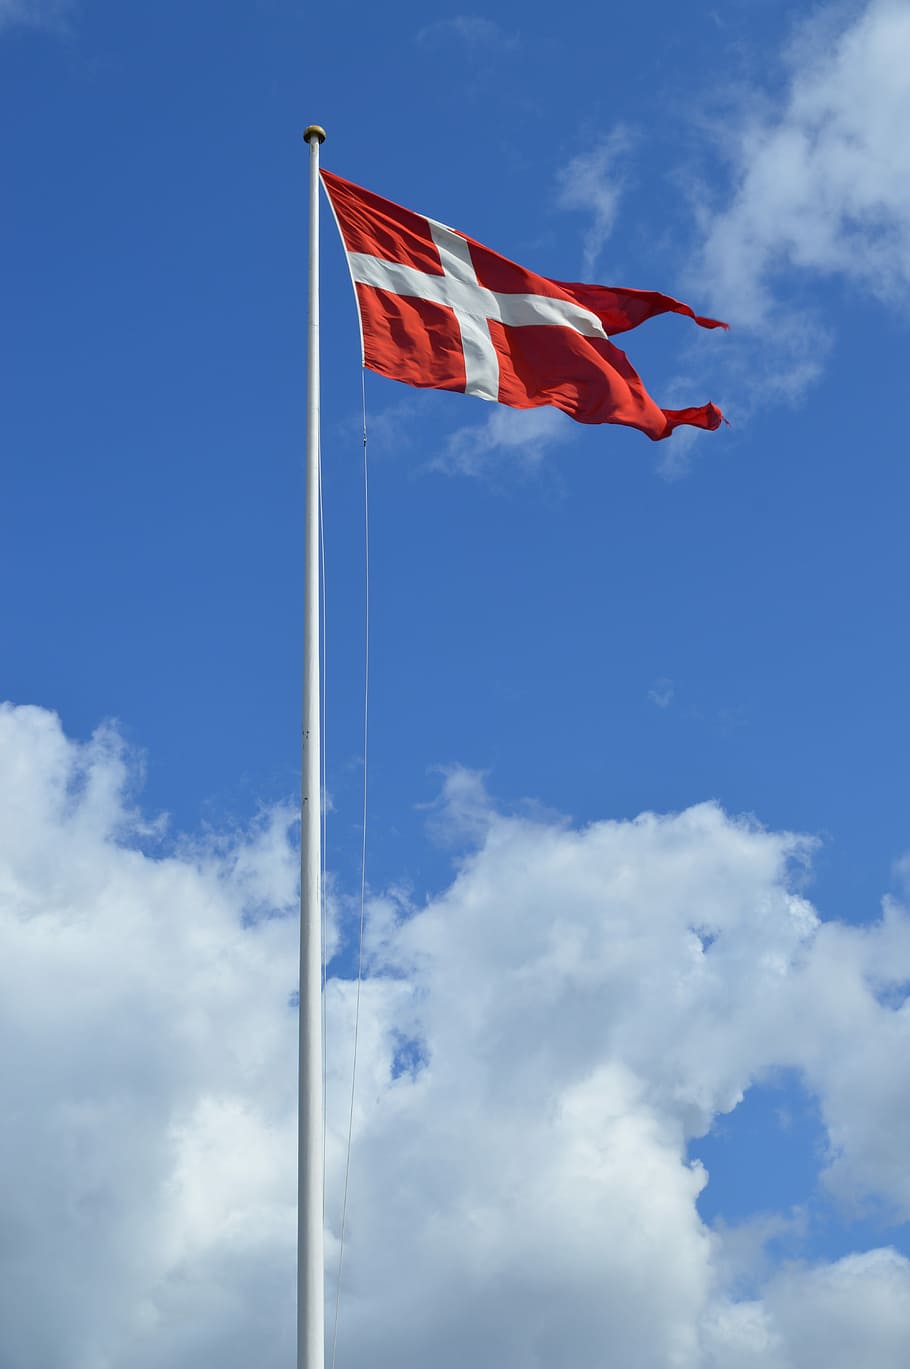 HD wallpaper: Danish Flag, Denmark, symbol, national, europe